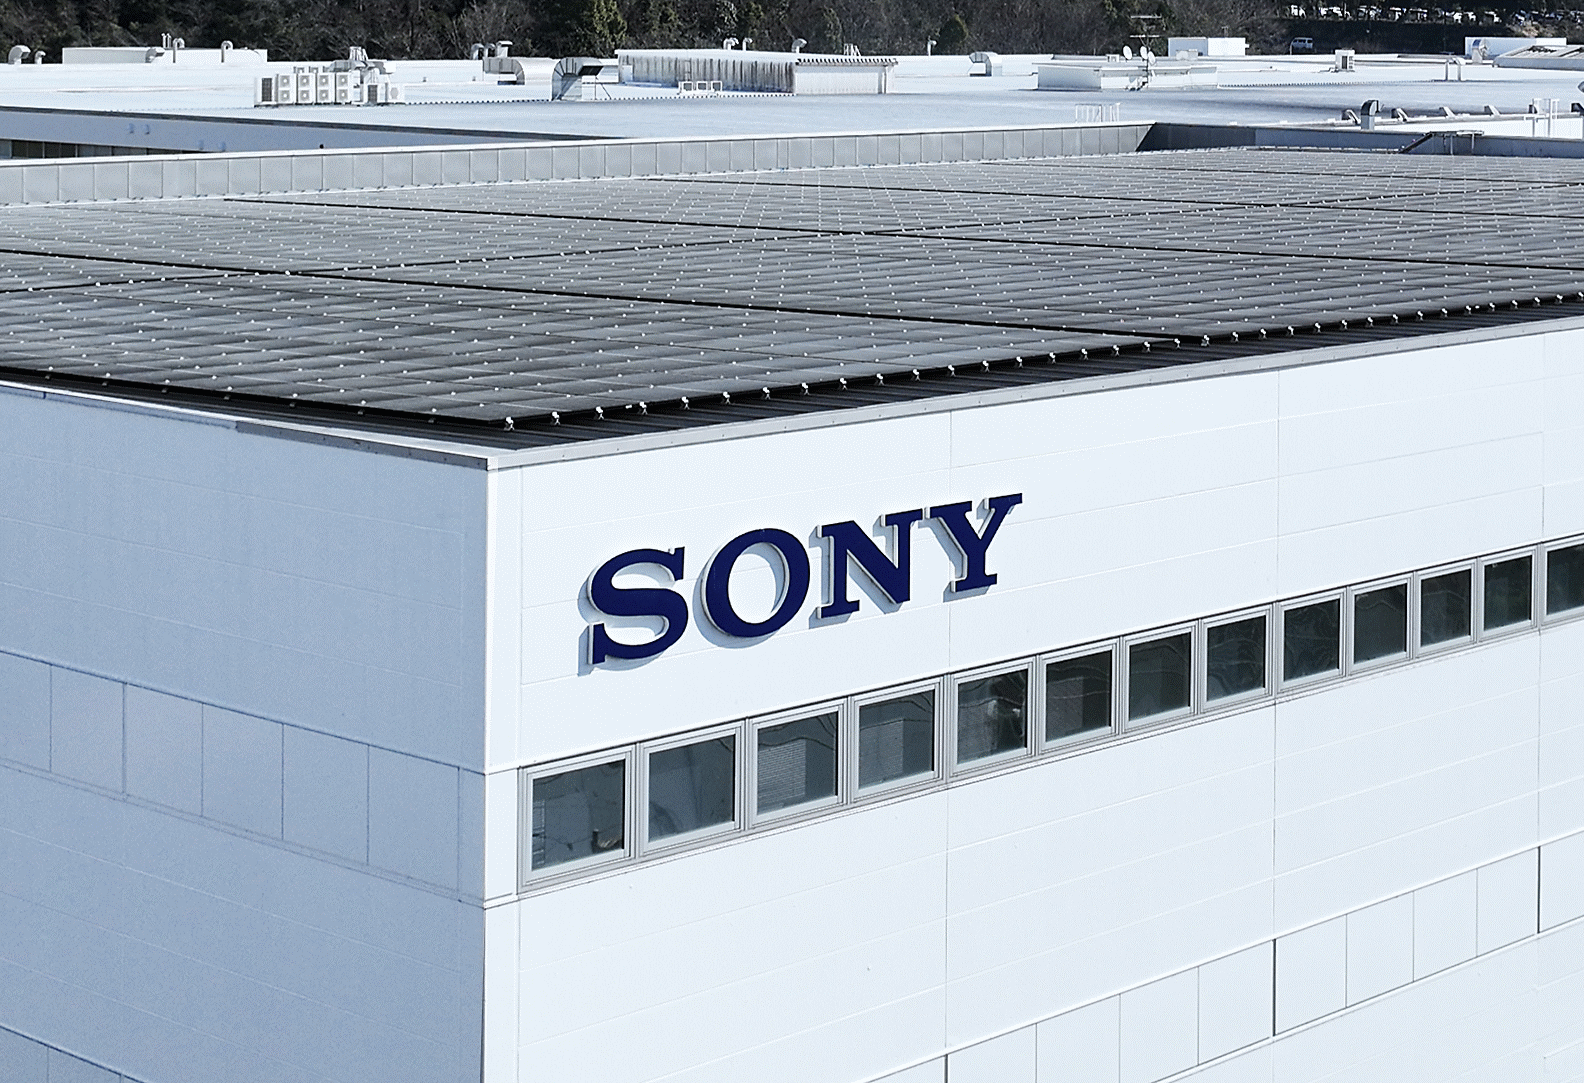 Fotografija prikazuje krov tvornice sa solarnim pločama i logotipom “SONY”